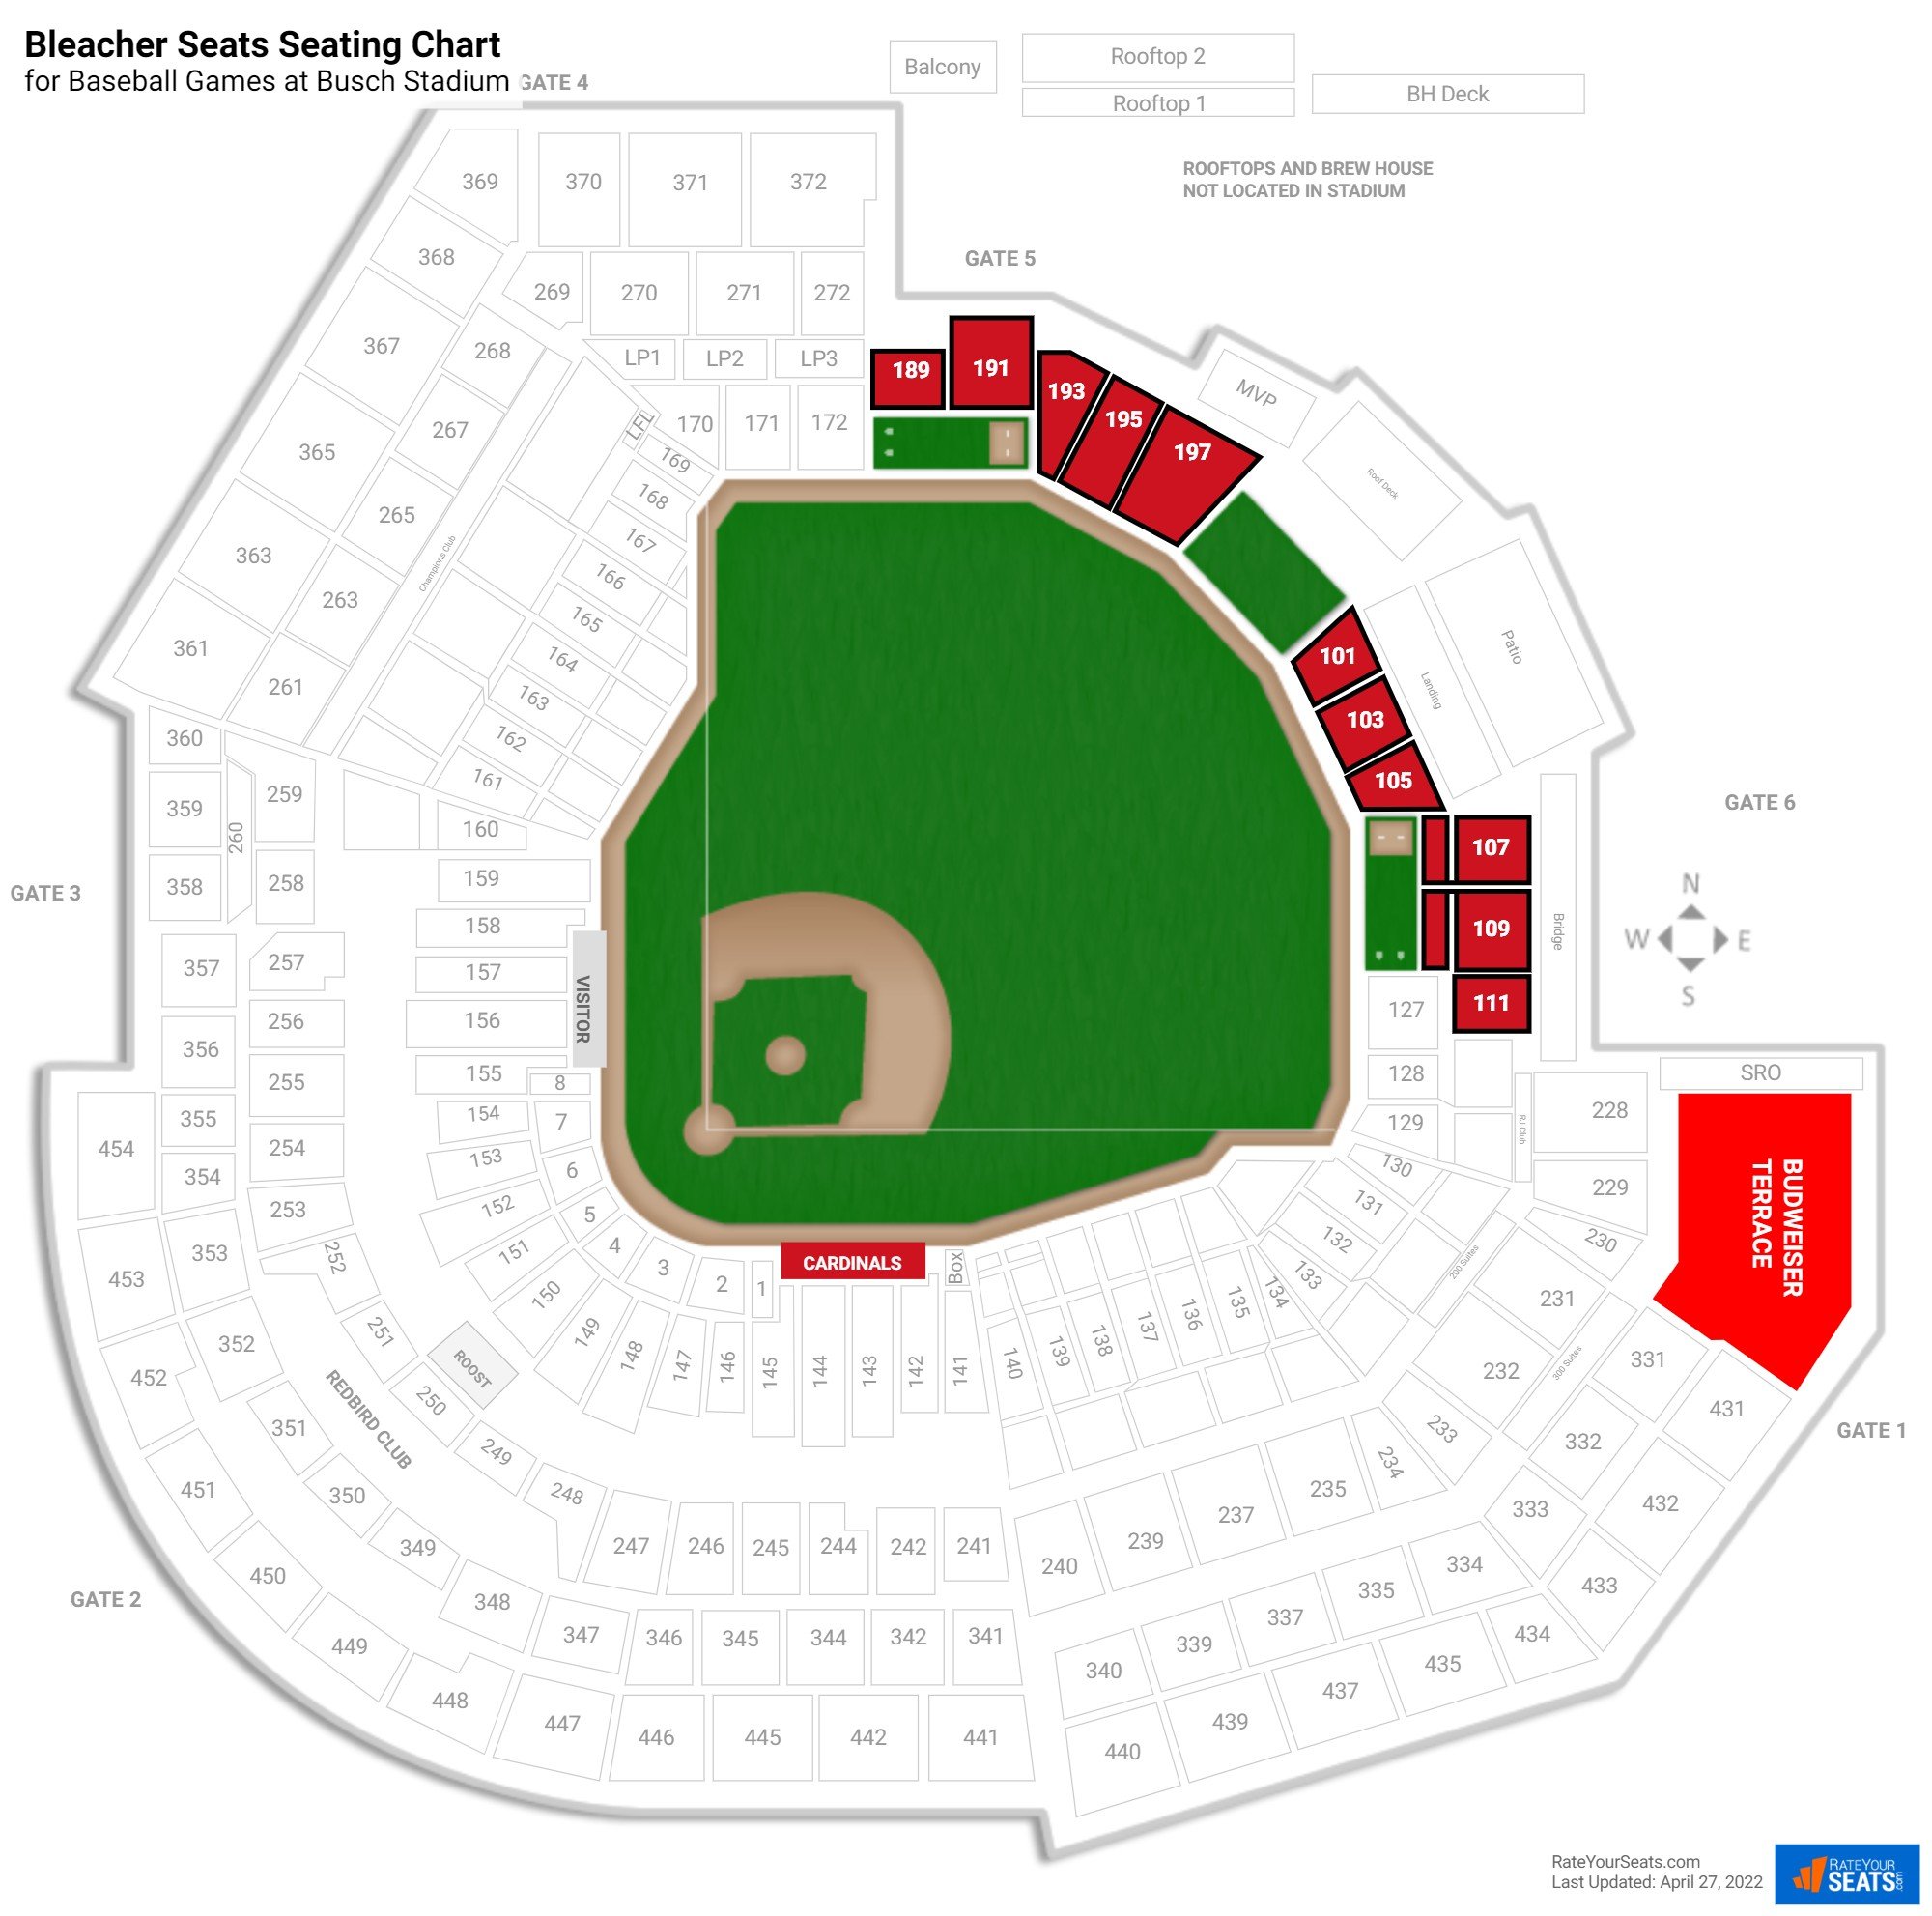 Baseball Bleacher Seats Seating Chart at Busch Stadium